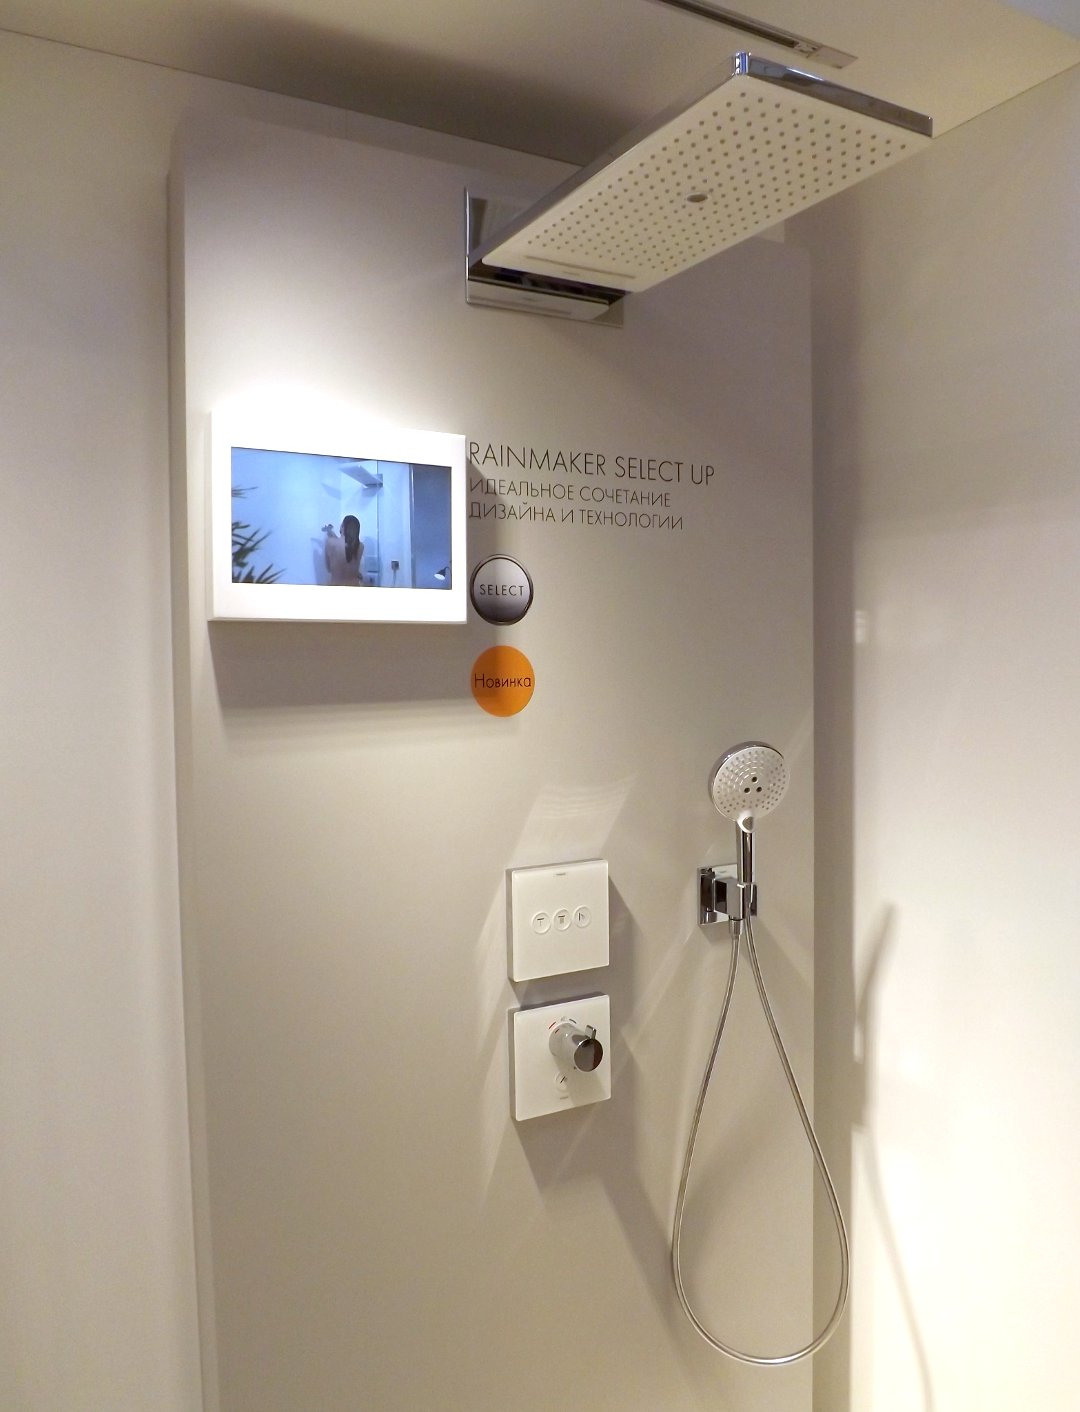 Современная душевая система от Hansgrohe со встроенным типом смесителя, представленная на одной из выставок MosBuild